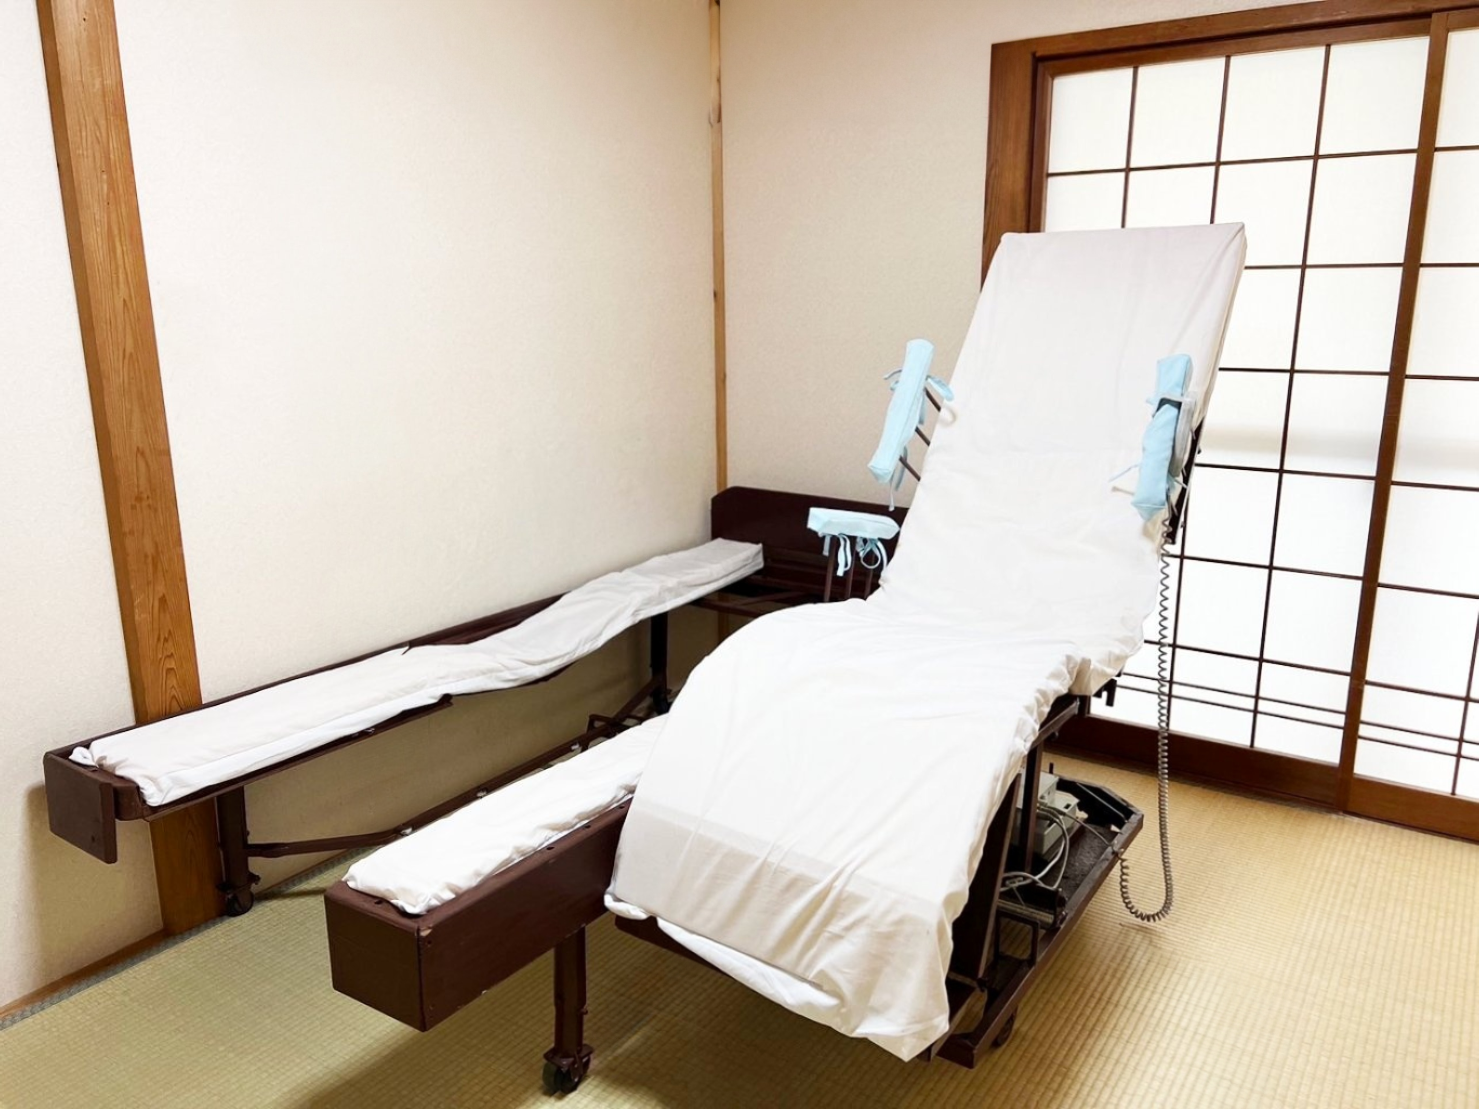 ベッド中央部が離脱する医療用介護ベッド「希望(のぞみ)」画像1